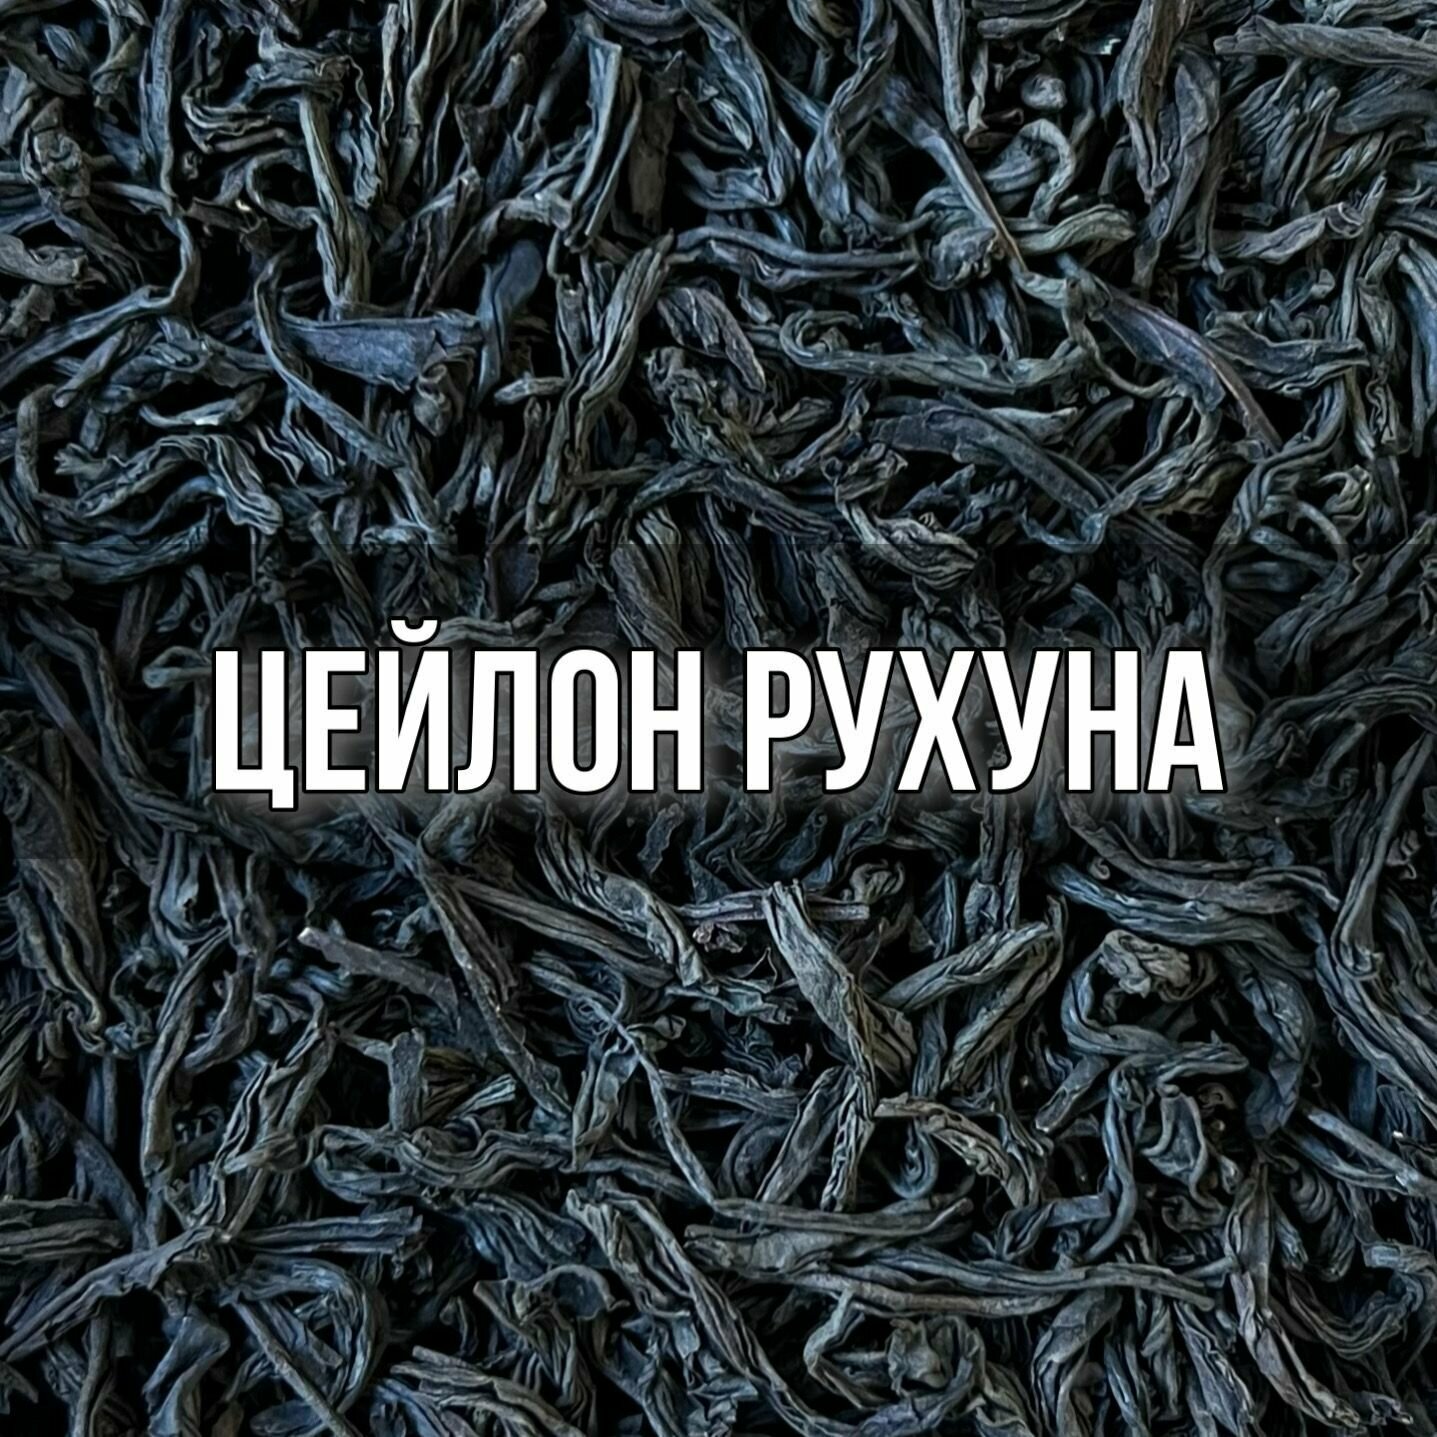 Чай чёрный цейлонский Рухуна, 100 гр, крупнолистовой, рассыпной, байховый крепкий ароматный насыщенный бергамот